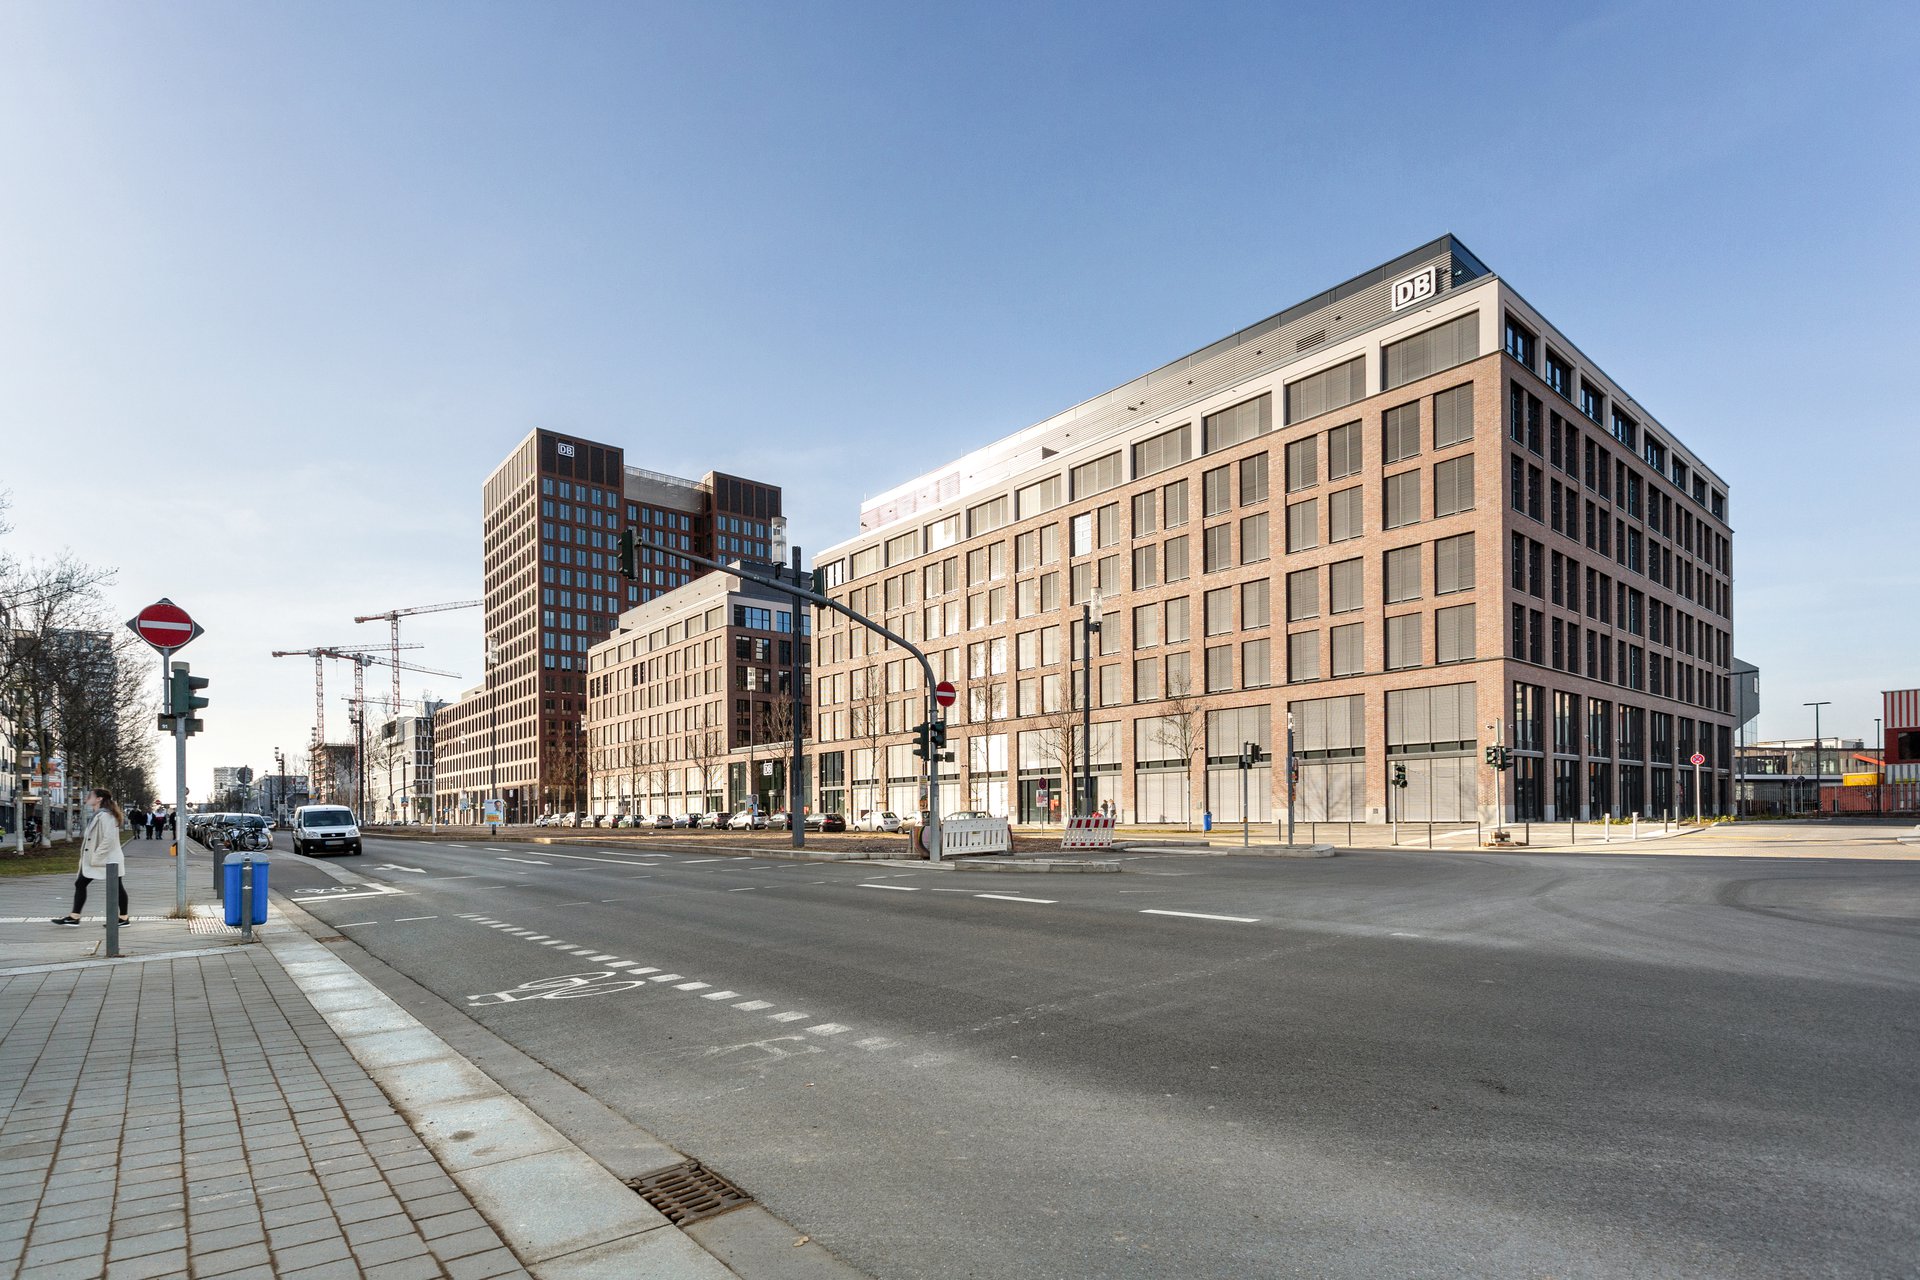 Büroimmobilie, DB Brick und DB Tower, Frankfurt am Main in Deutschland - HIH Real Estate (HIH-Gruppe)